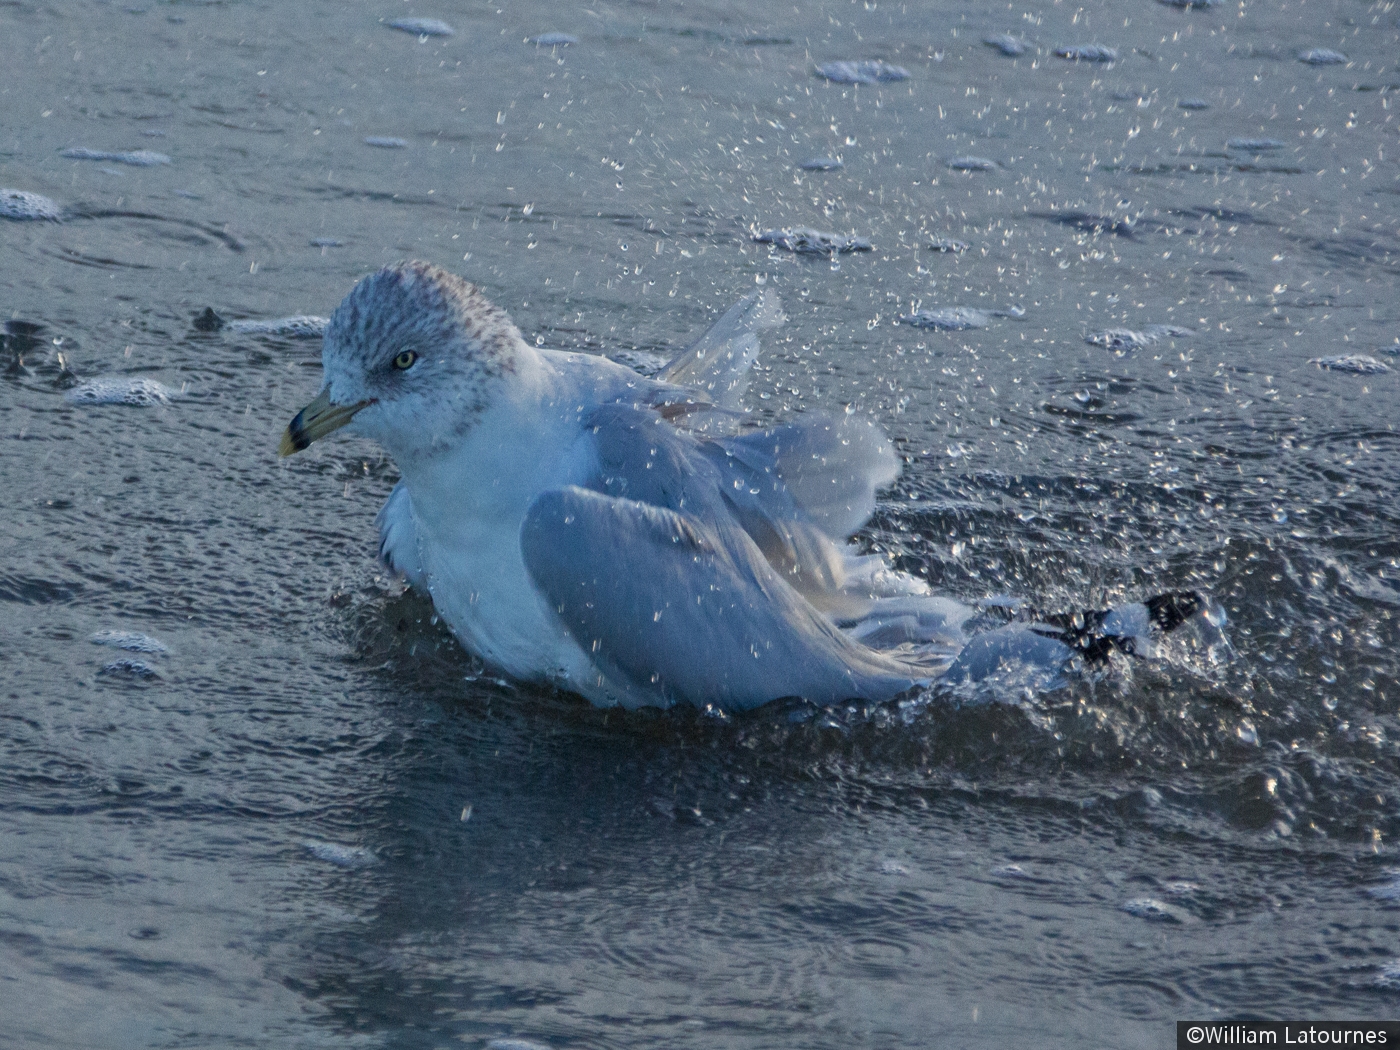 Seagull Taking A Bath by William Latournes